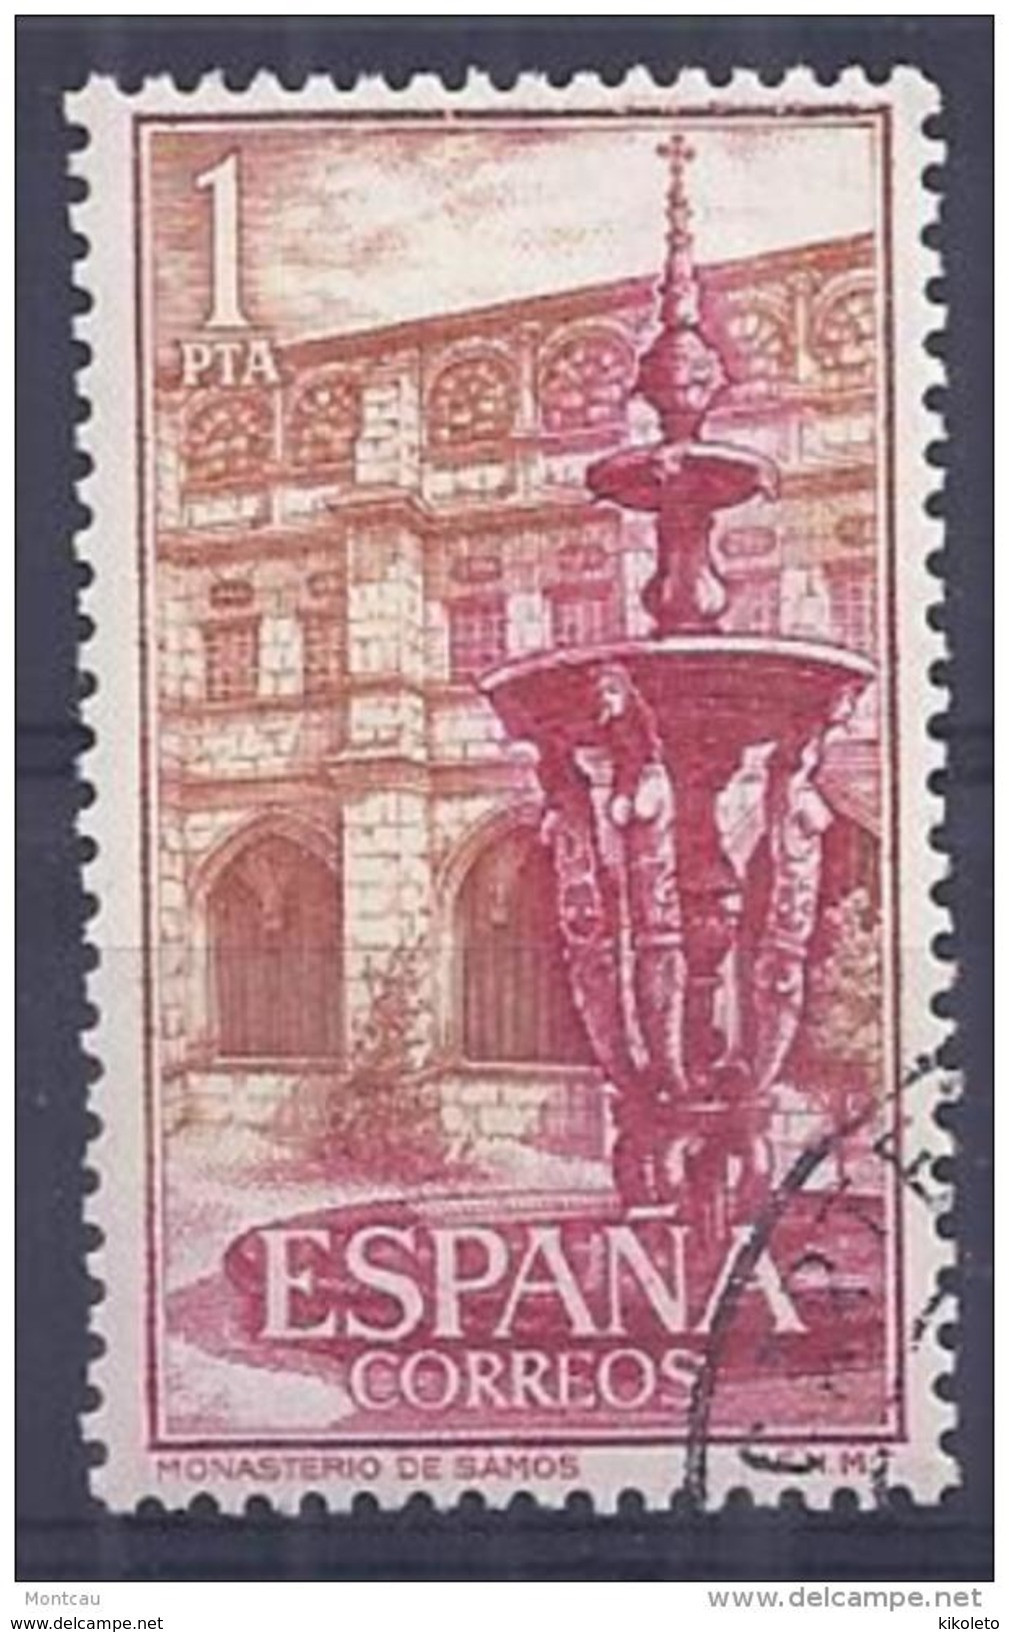 ESPAÑA SPAIN AÑO YEAR 1960 EDIFIL Nº 1323 - USADO (o) USED (o) - REAL MONASTERIO DE SAMOS - 1 Pta - Oblitérés